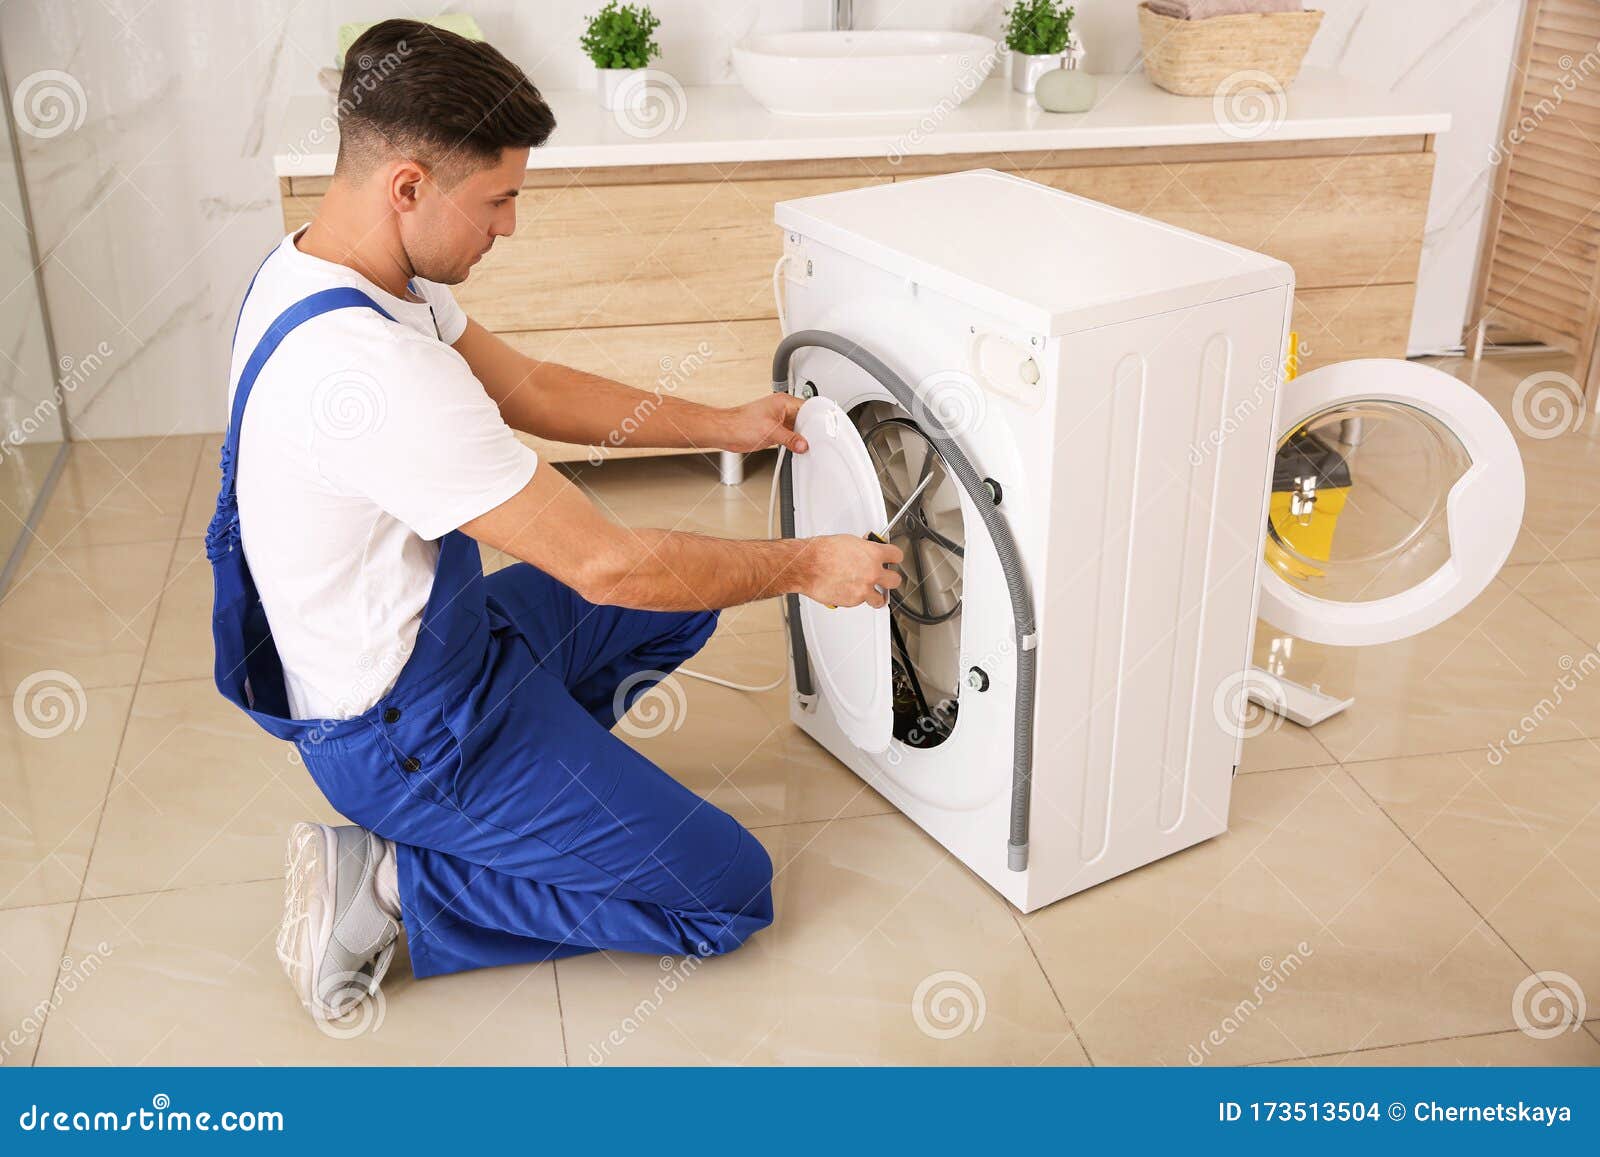 Стиральная машина где продают. Мужчина и стиральная машина. Неисправная стиральная машина. Стиральная машина servis. Поломки стиральных машин.